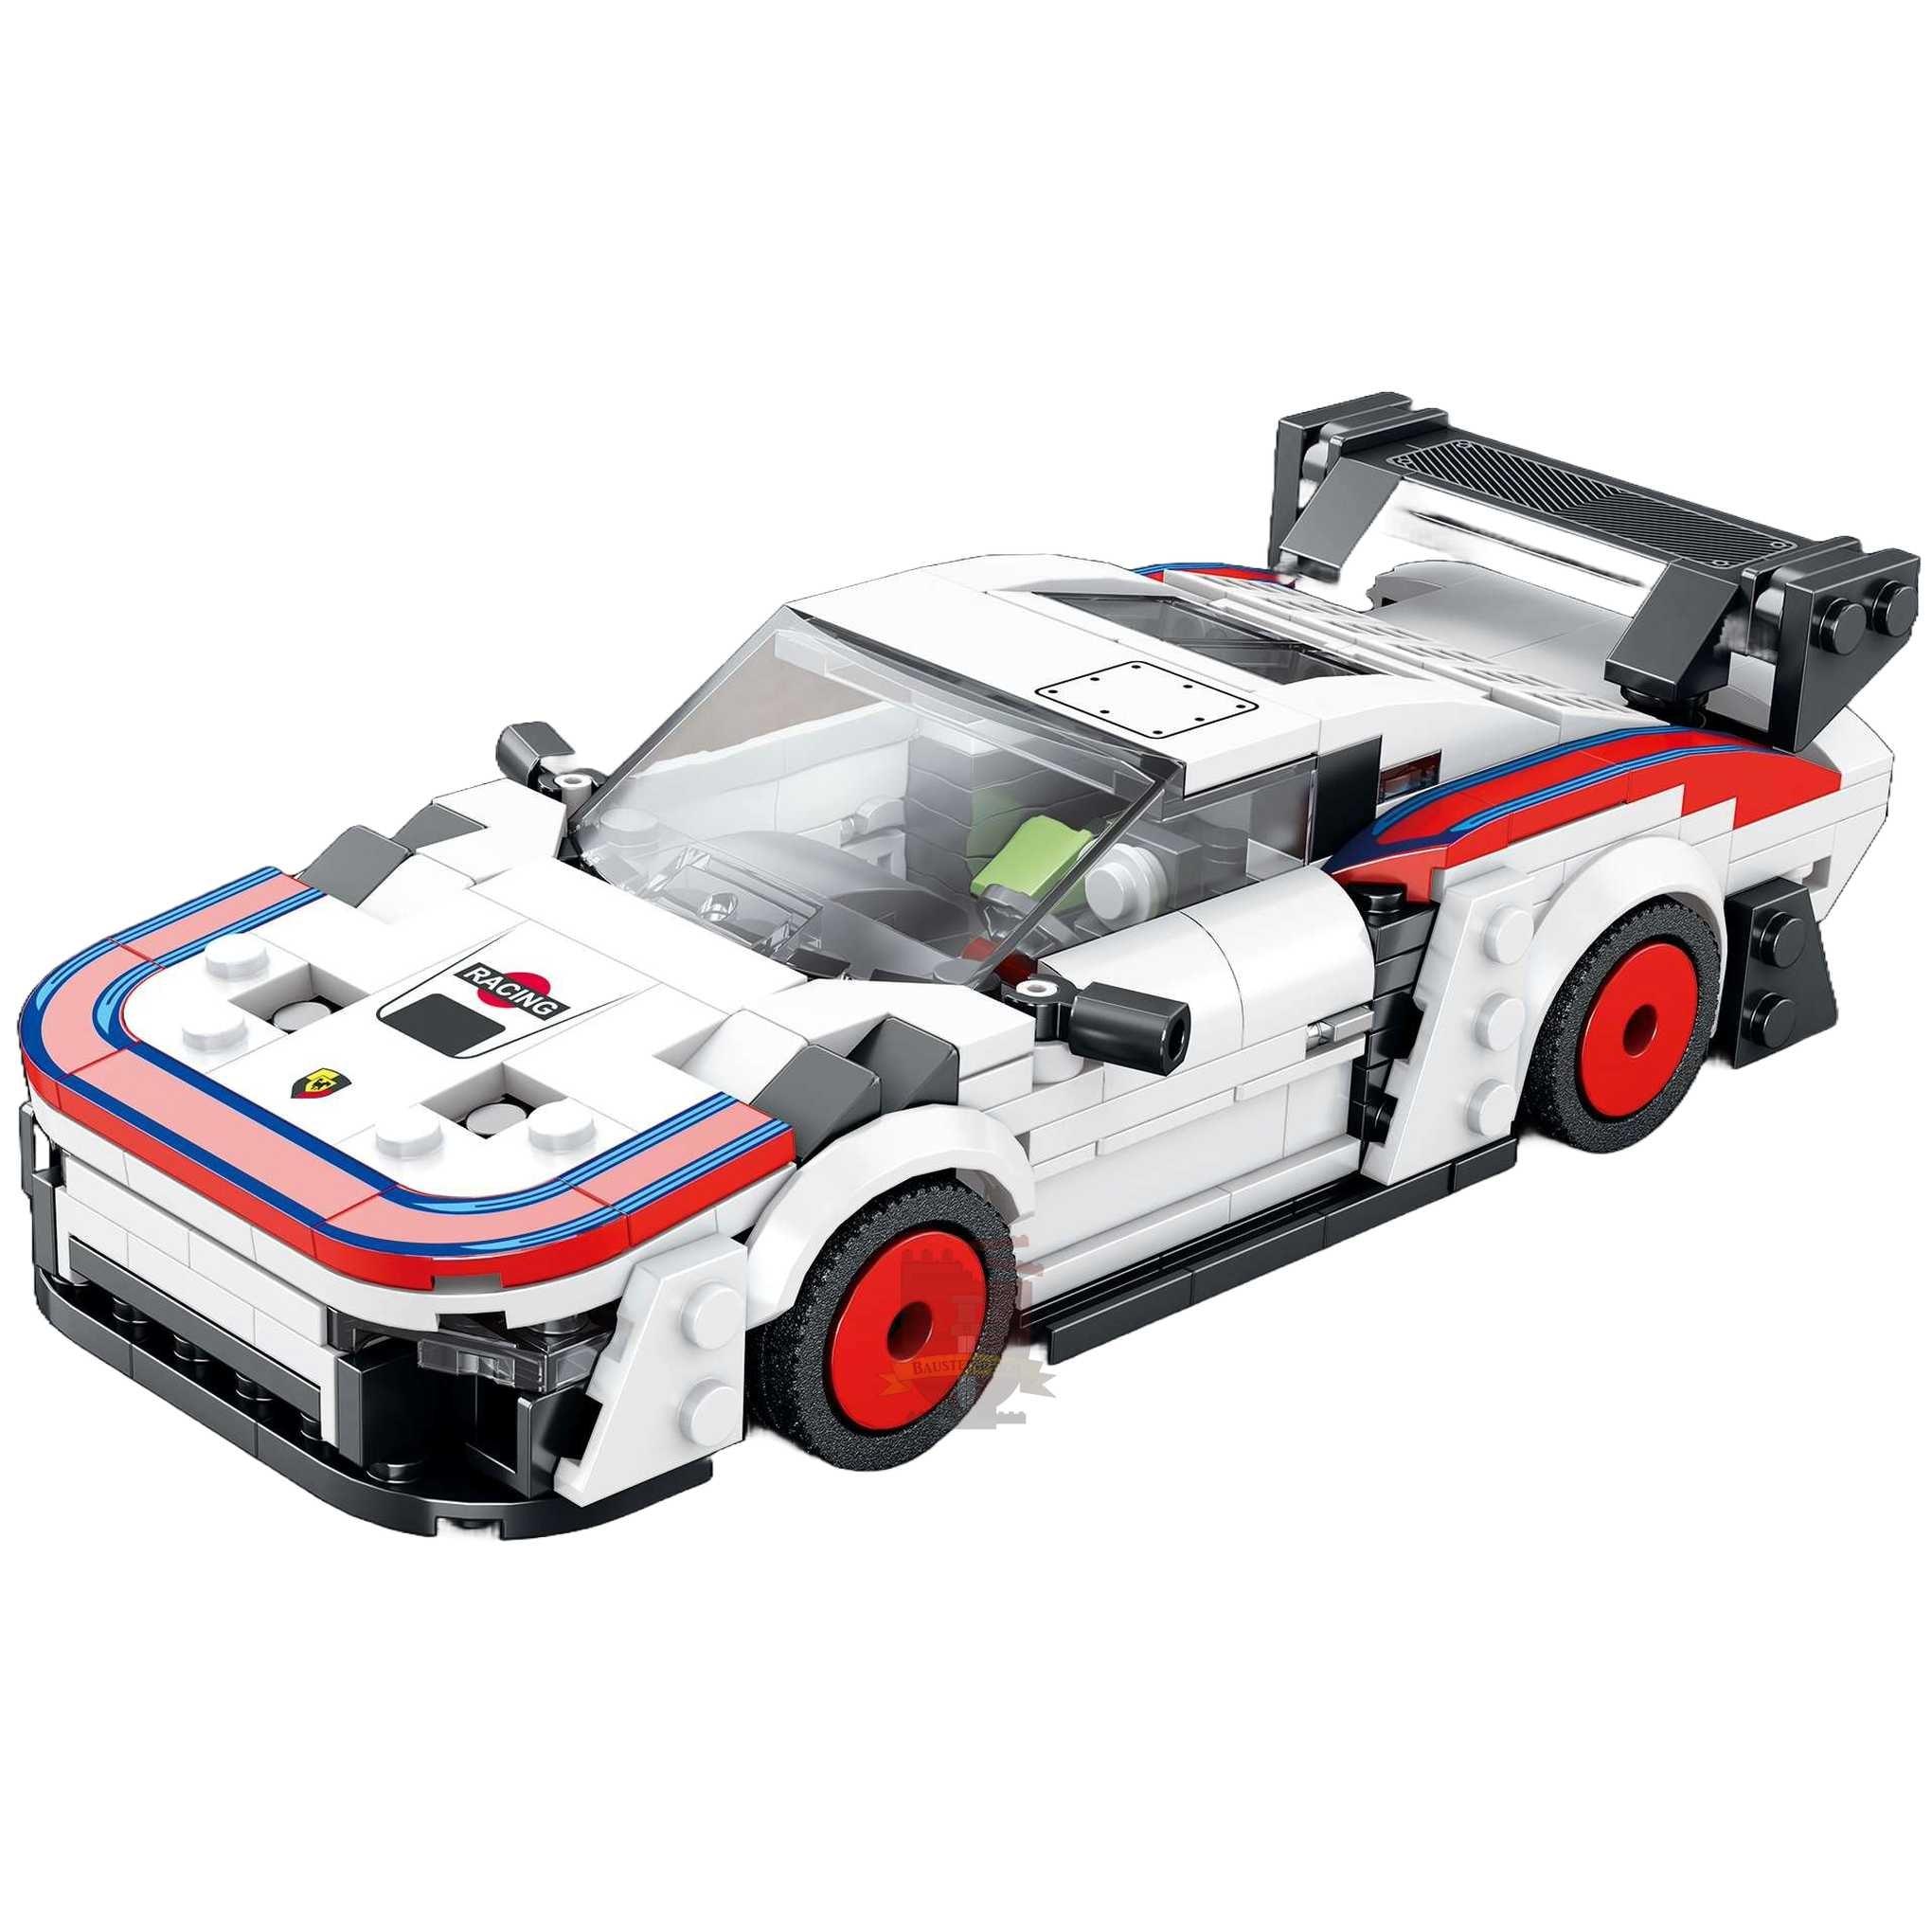 Porsche 935 s set, compatible with Lego